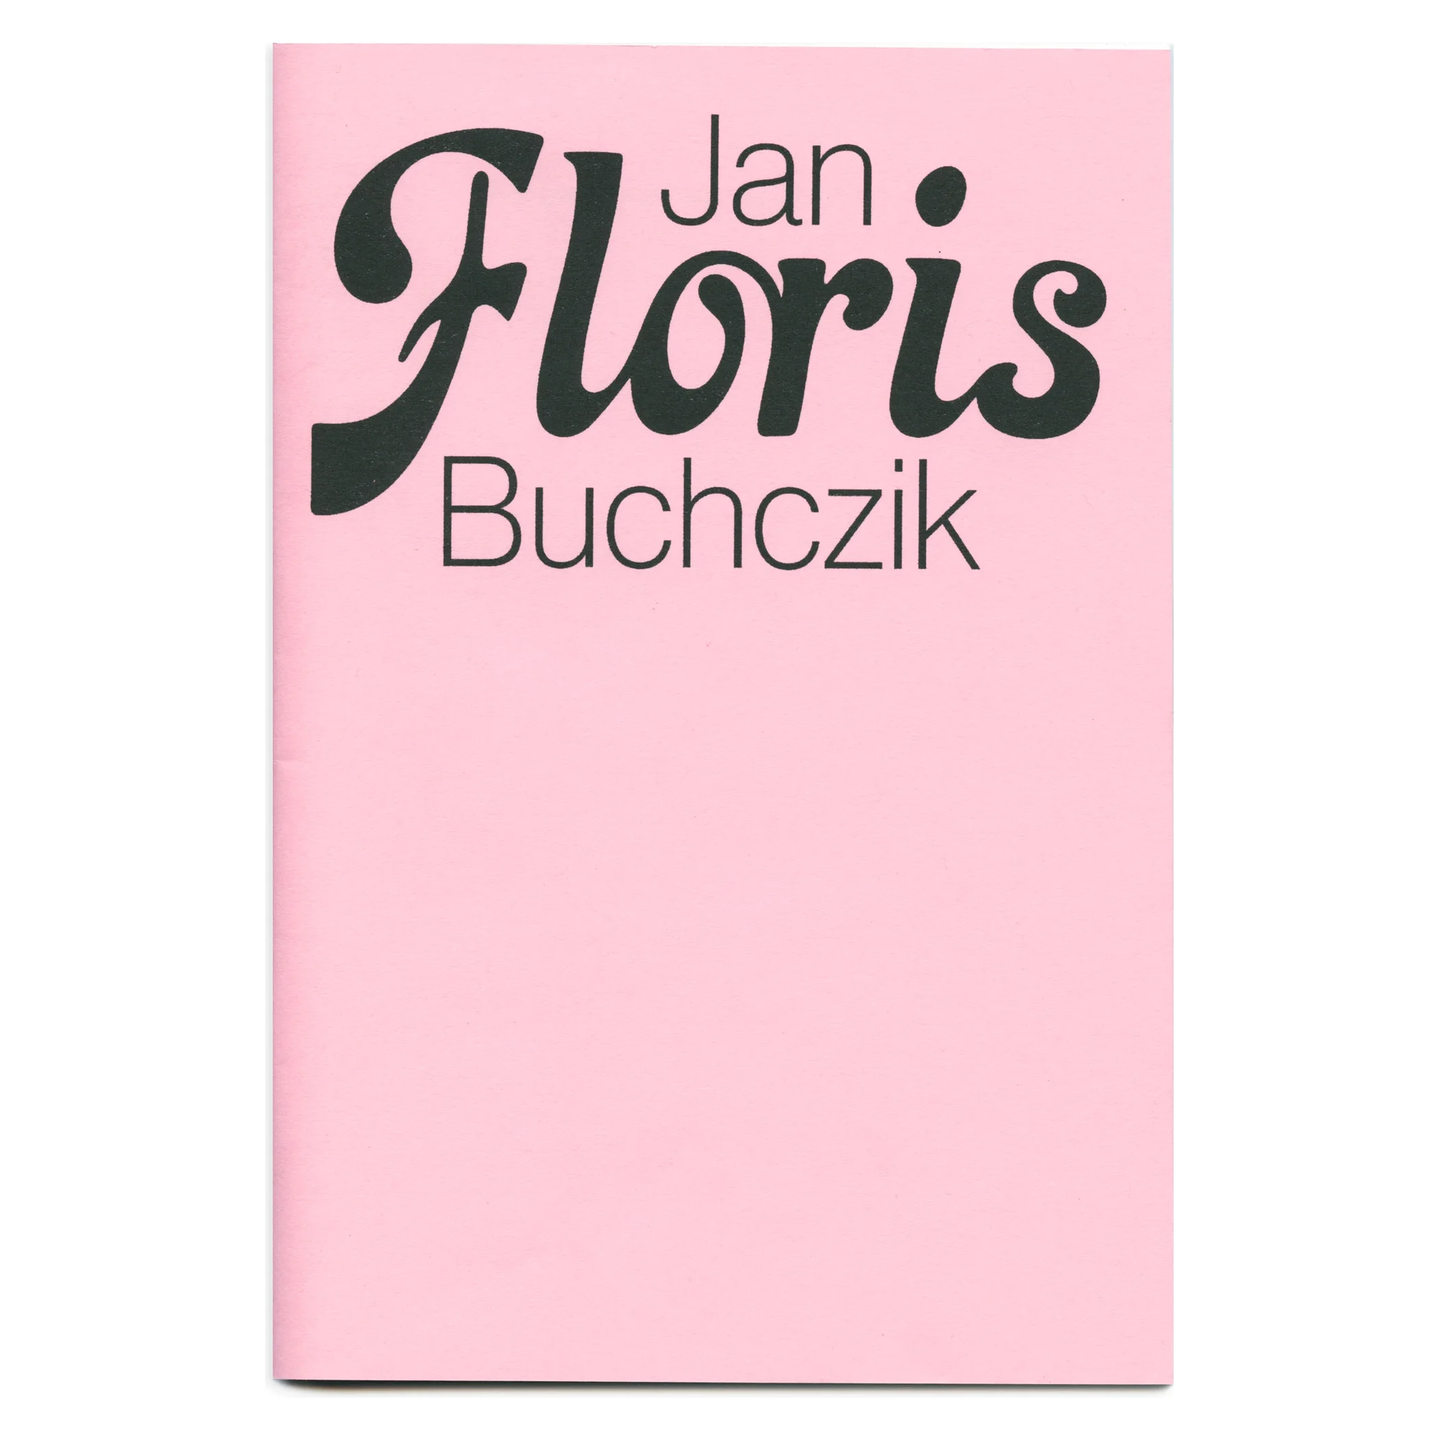 Floris by Jan Buchczik